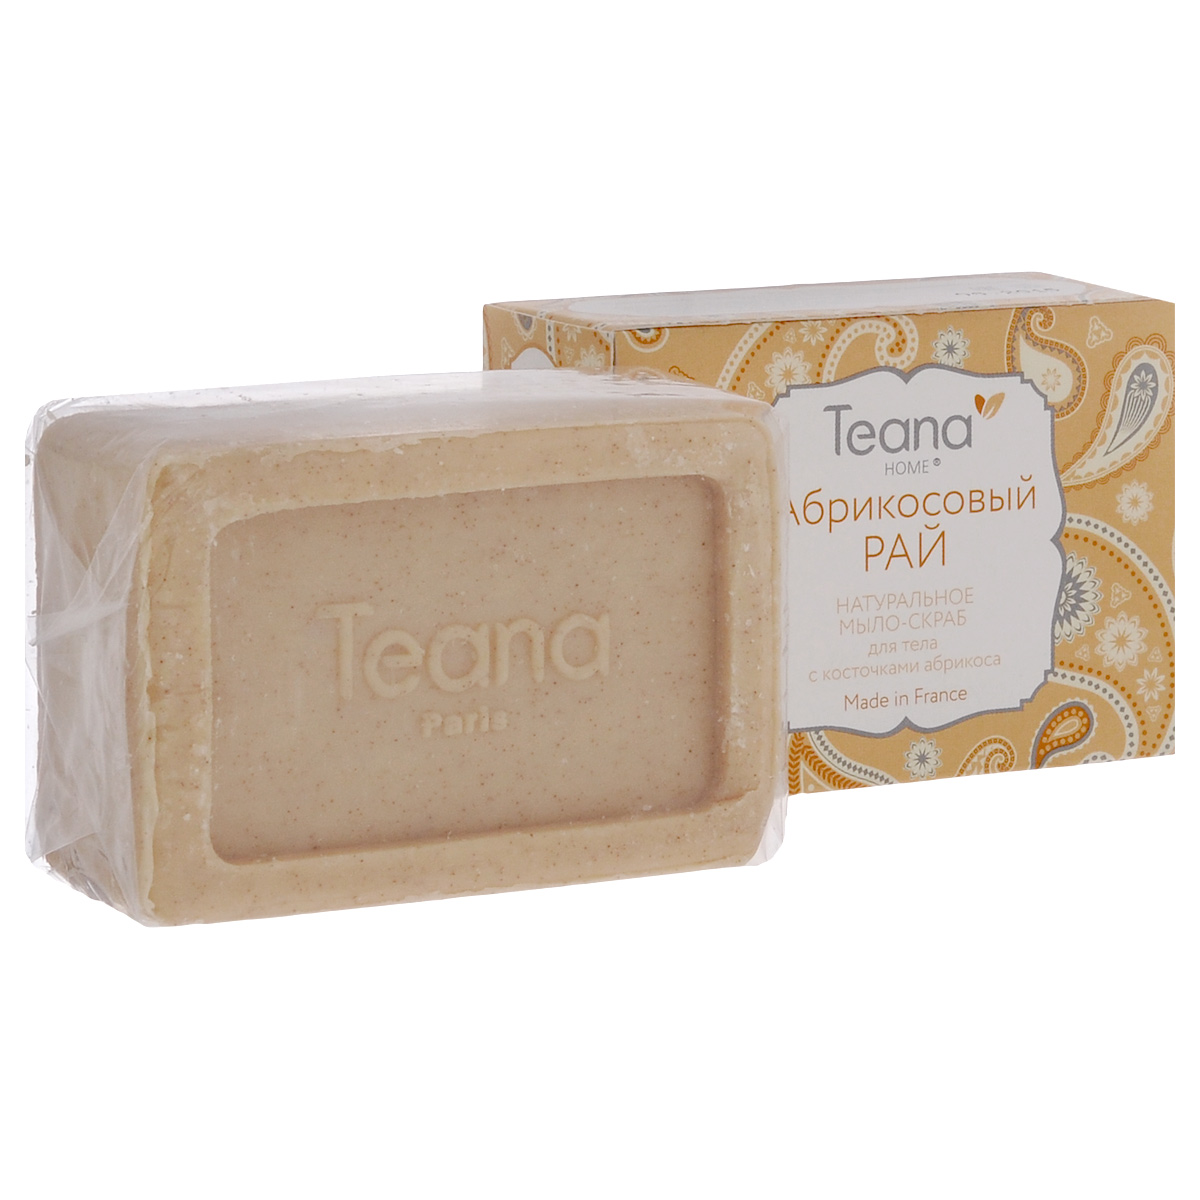 Teana Натуральное мыло-скраб для тела 